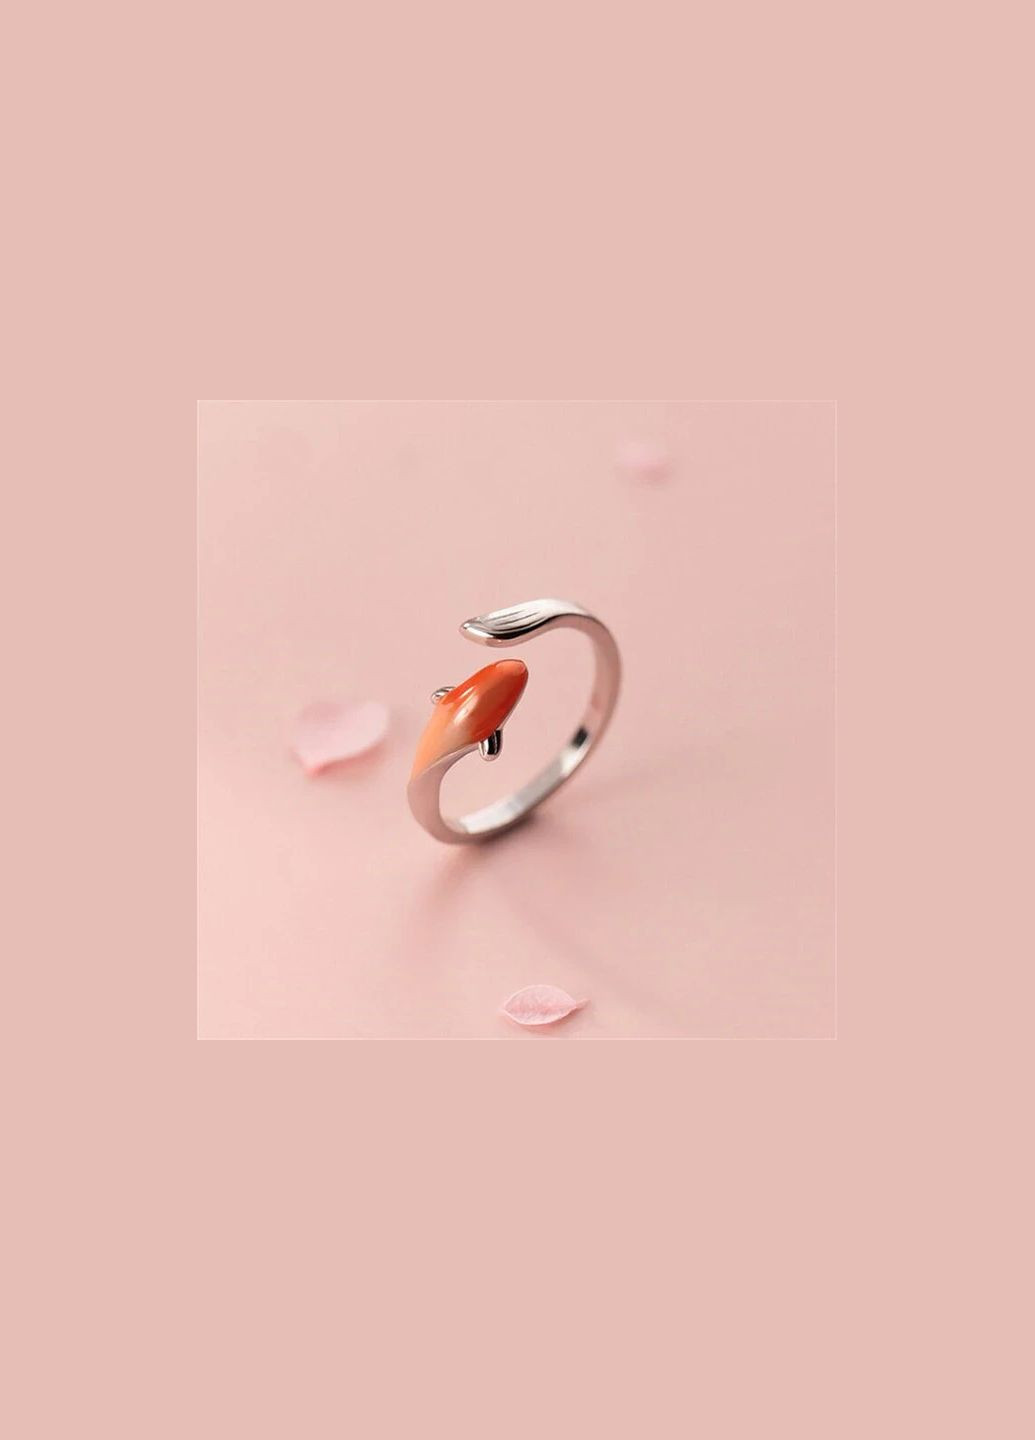 Кольцо женское под серебро красивый оранжевый карп Кои рыба колечко в виде рыбки Кои размер регулируемый Fashion Jewelry (290982091)